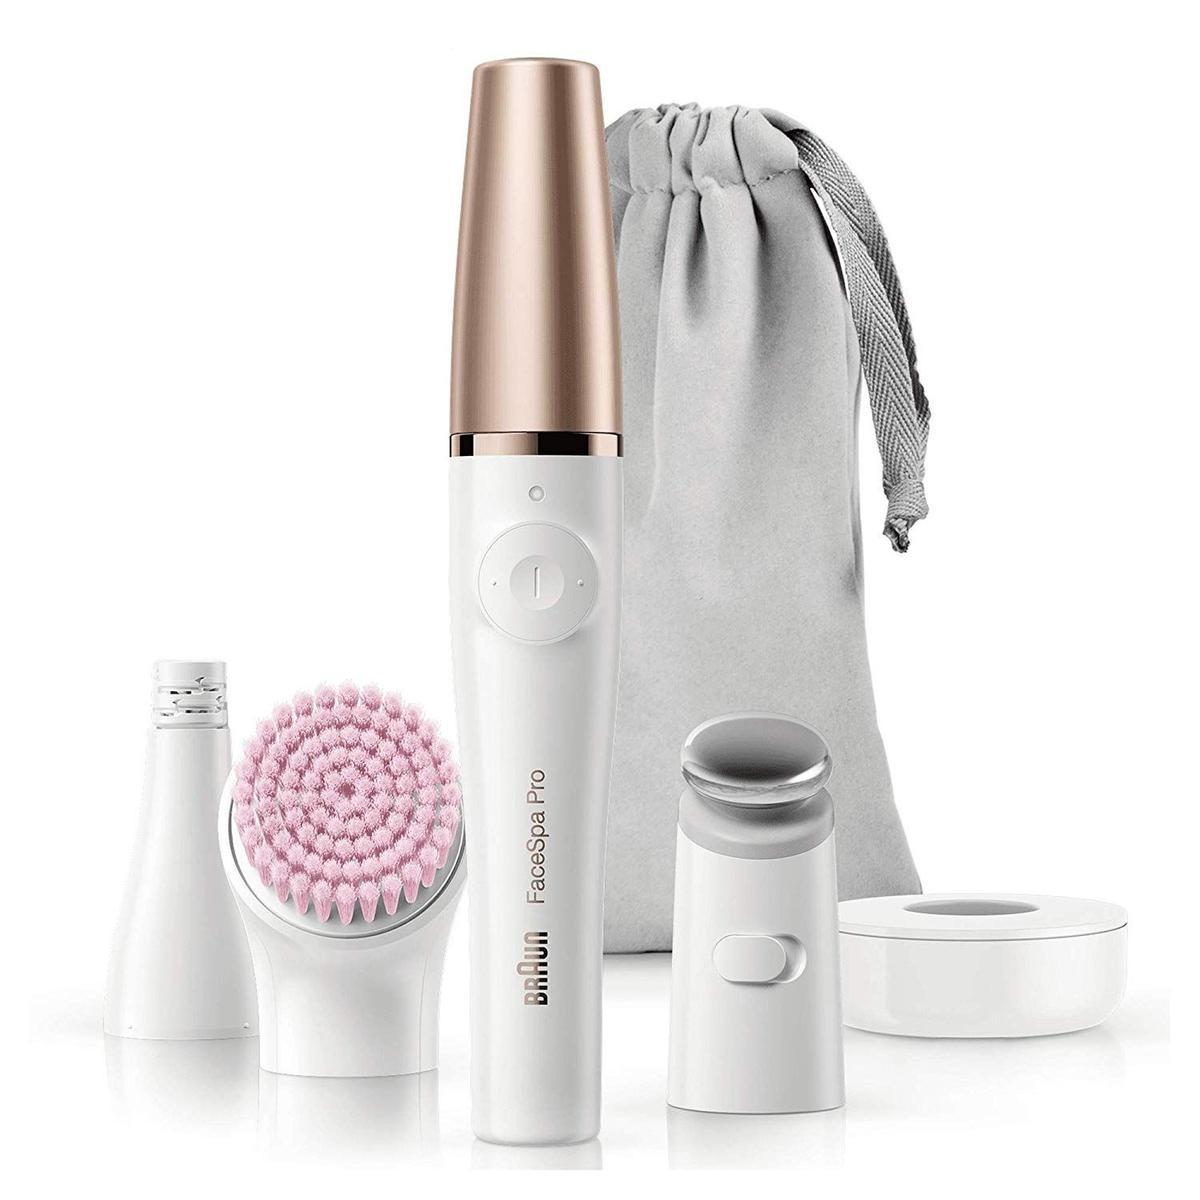 Braun Facespa Pro 912 Sistema depiladora Facial Mujer 3 en 1, Depiladora Eléctrica Facial Mujer, Cepillo Limpieza Facial y Cabezal Tonificador, Blanco